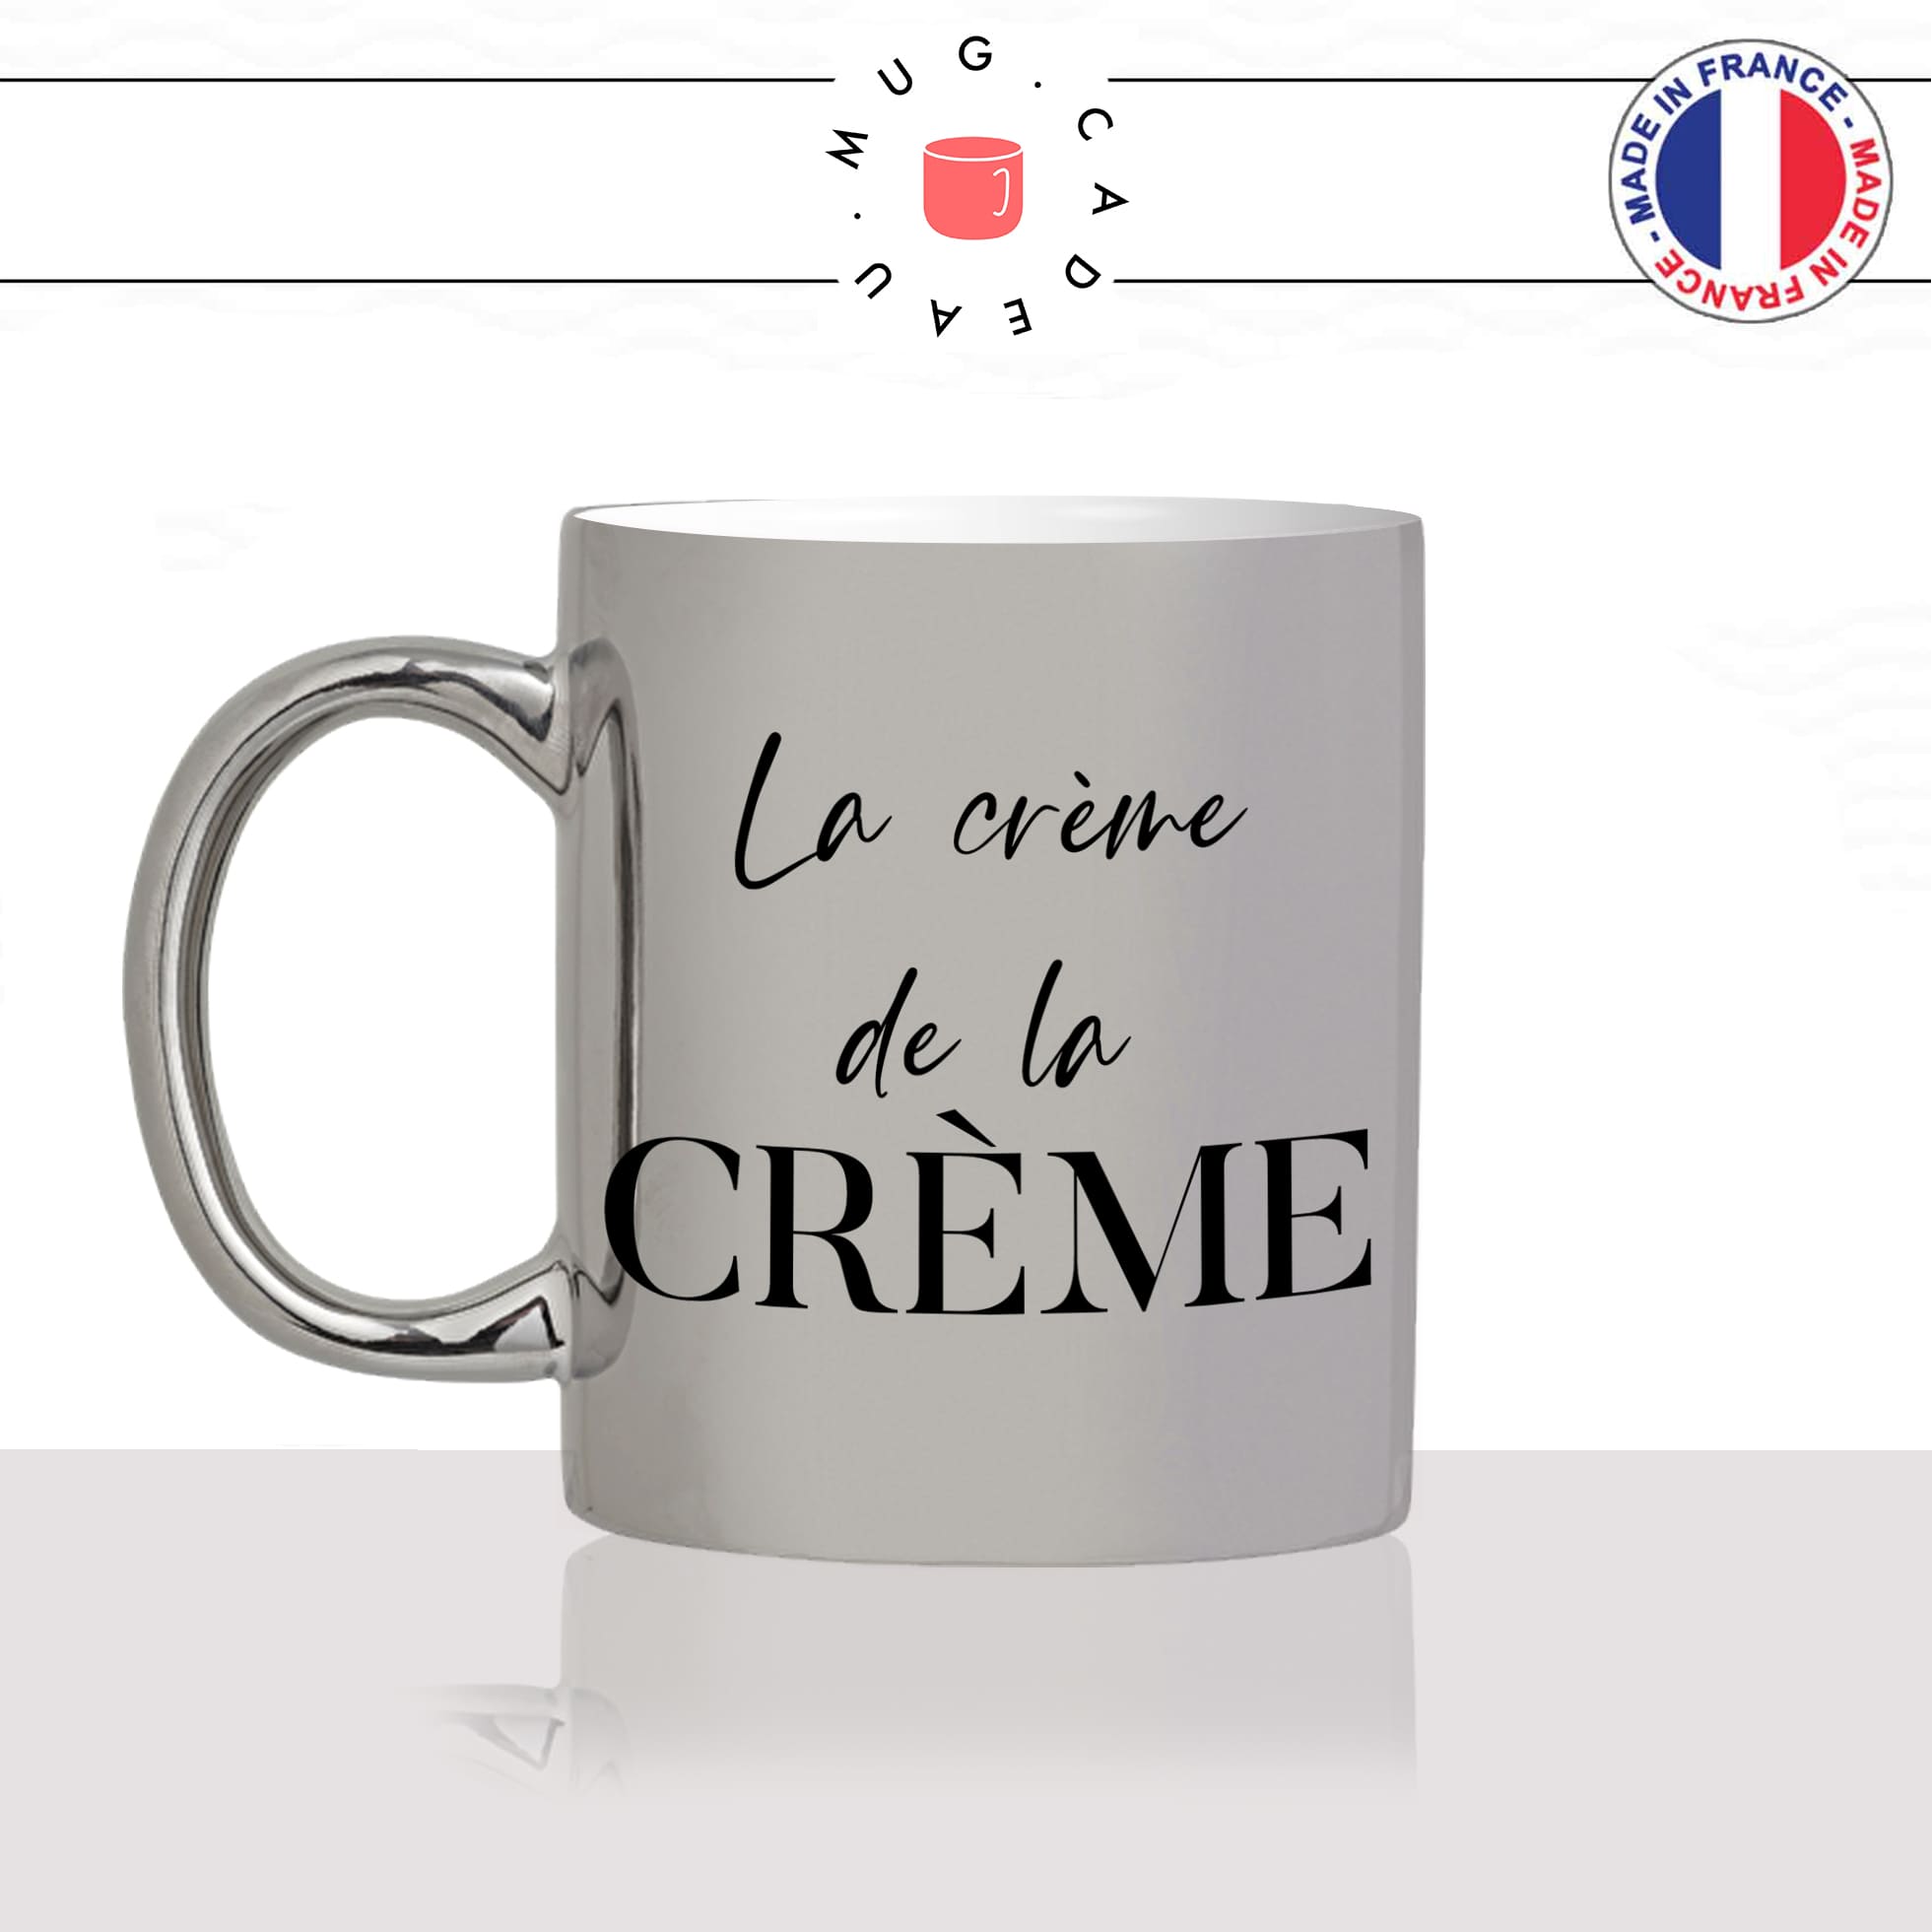 mug-tasse-argent-métalisé-brillant-cadeau-la-crème-de-la-crème-femme-homme-collègue-ami-copine-humour-café-thé-personnalisé-personnalisable